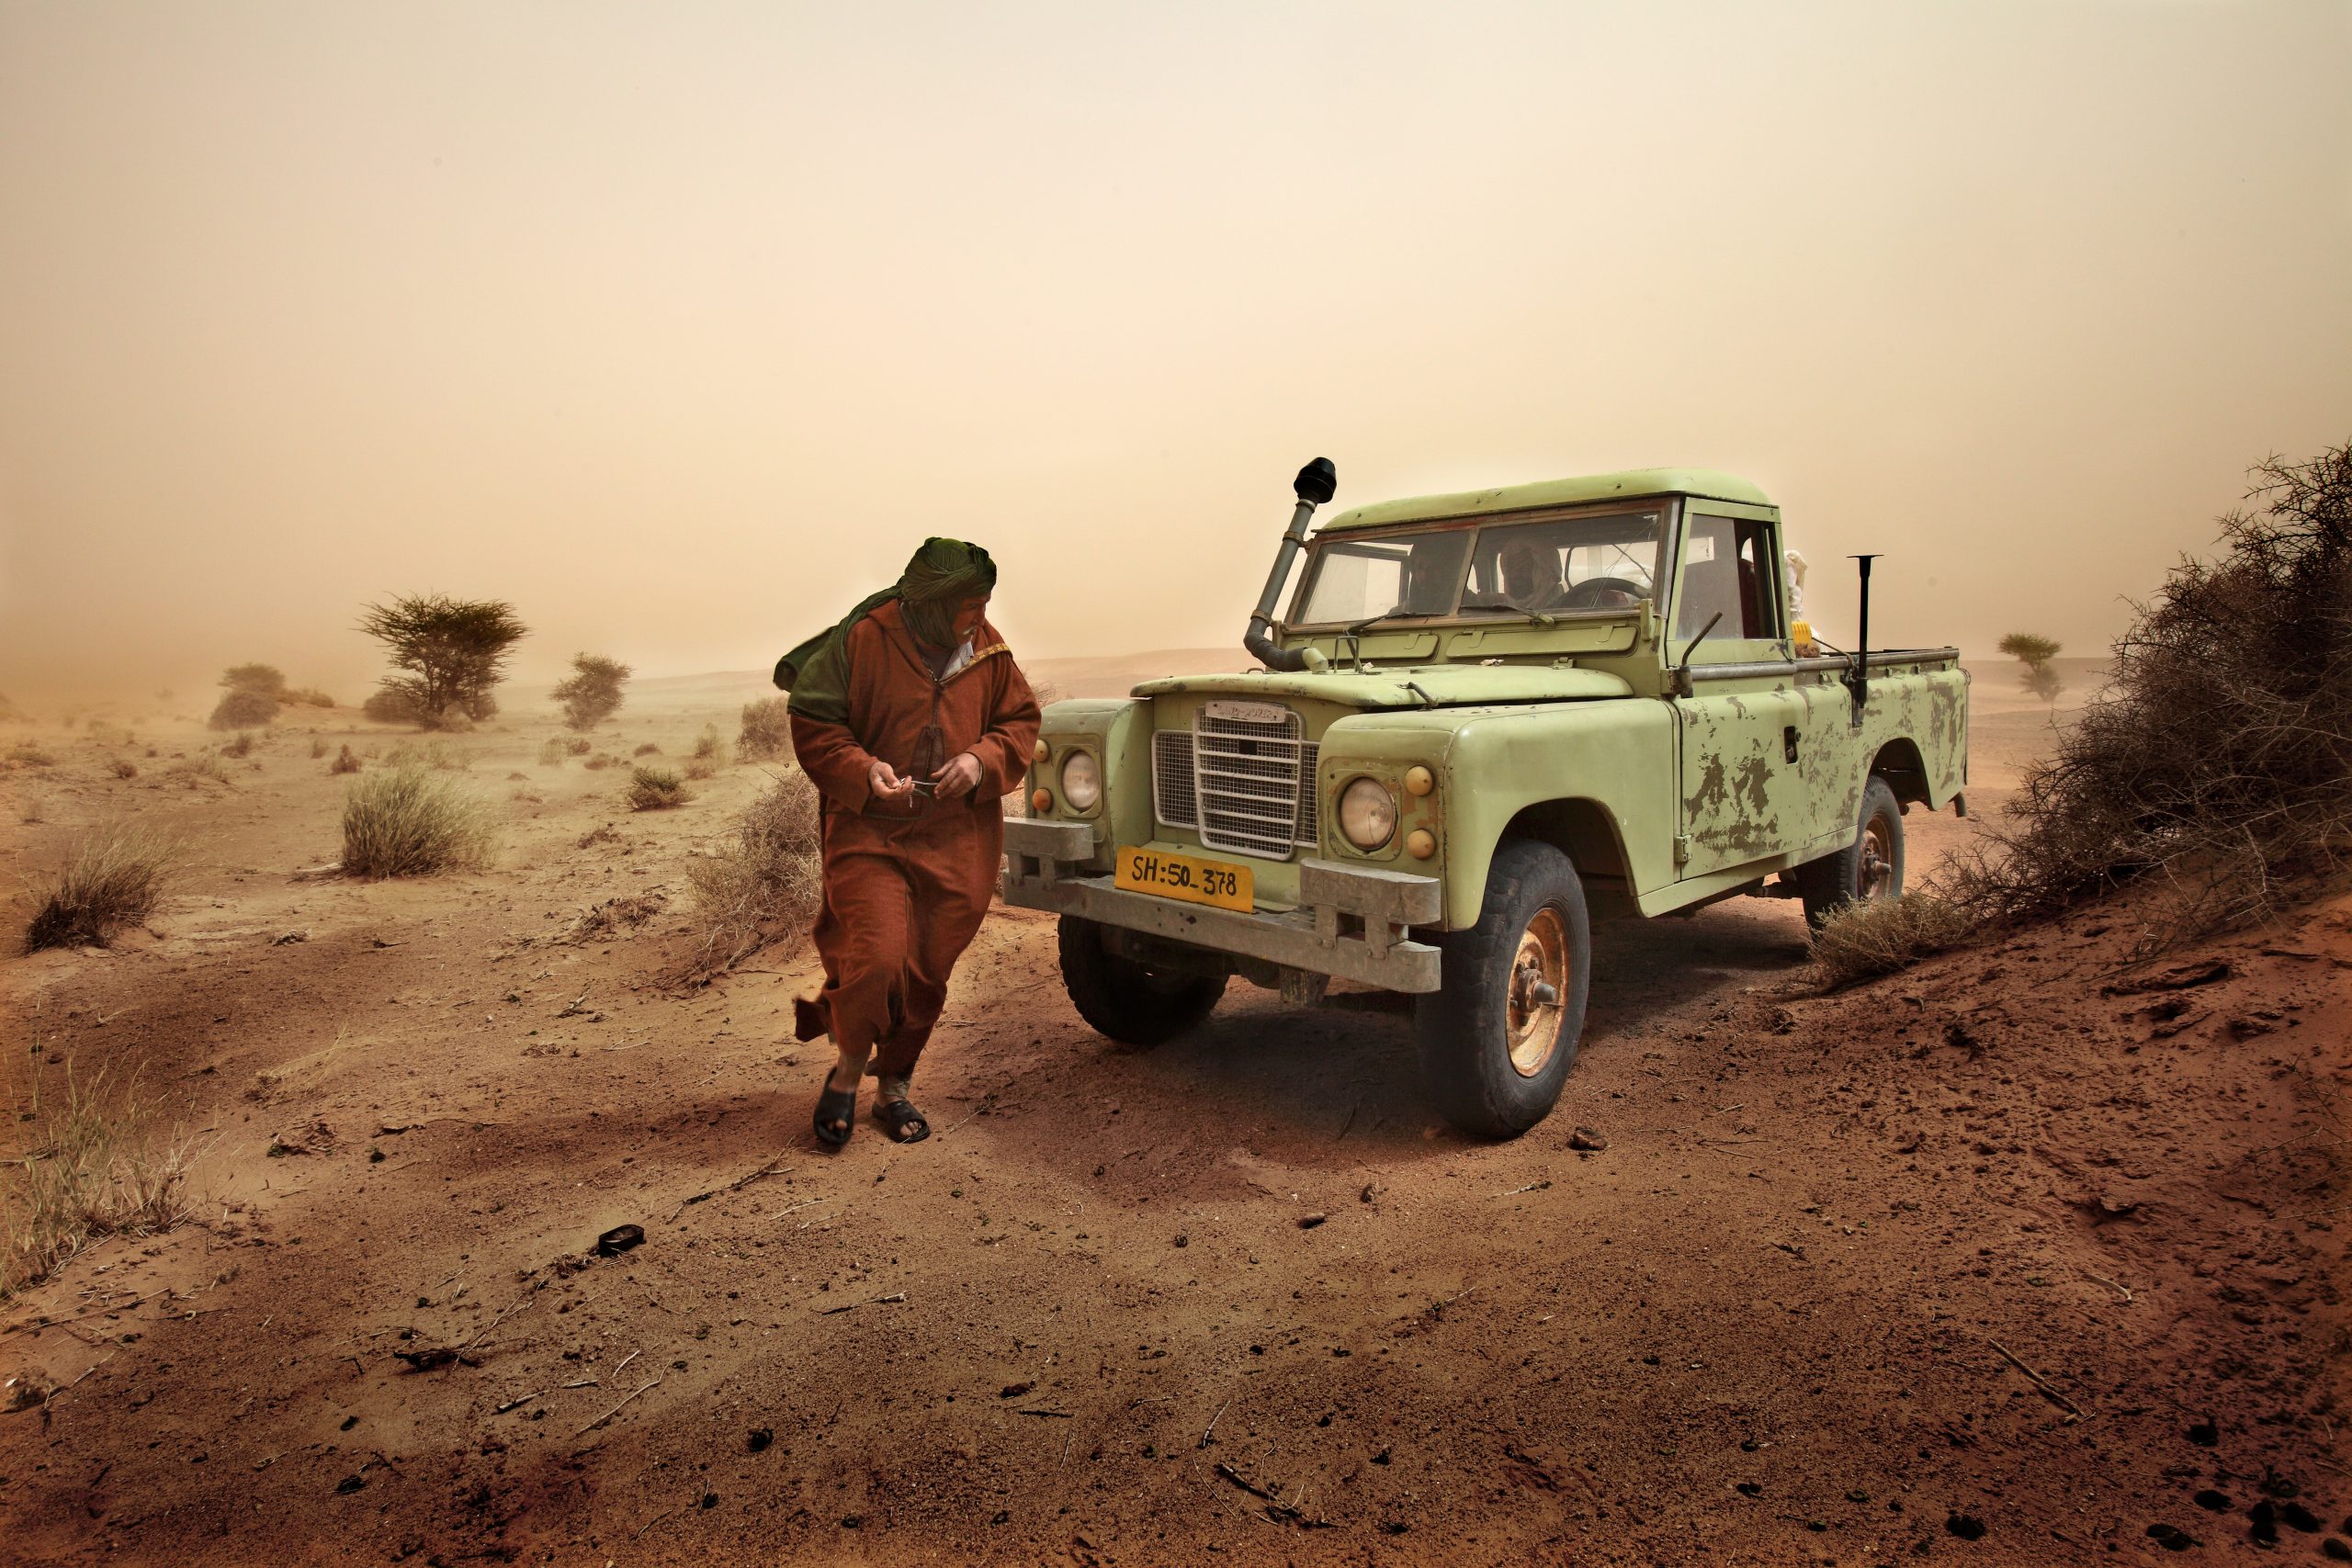 Sahara Occidentale - Un Saharawi con la sua vecchia Land Rover durante una tempesta di sabbia nei territori del Sahara Occidentale liberi dall'invasione marocchina.©Bruno Zanzottera